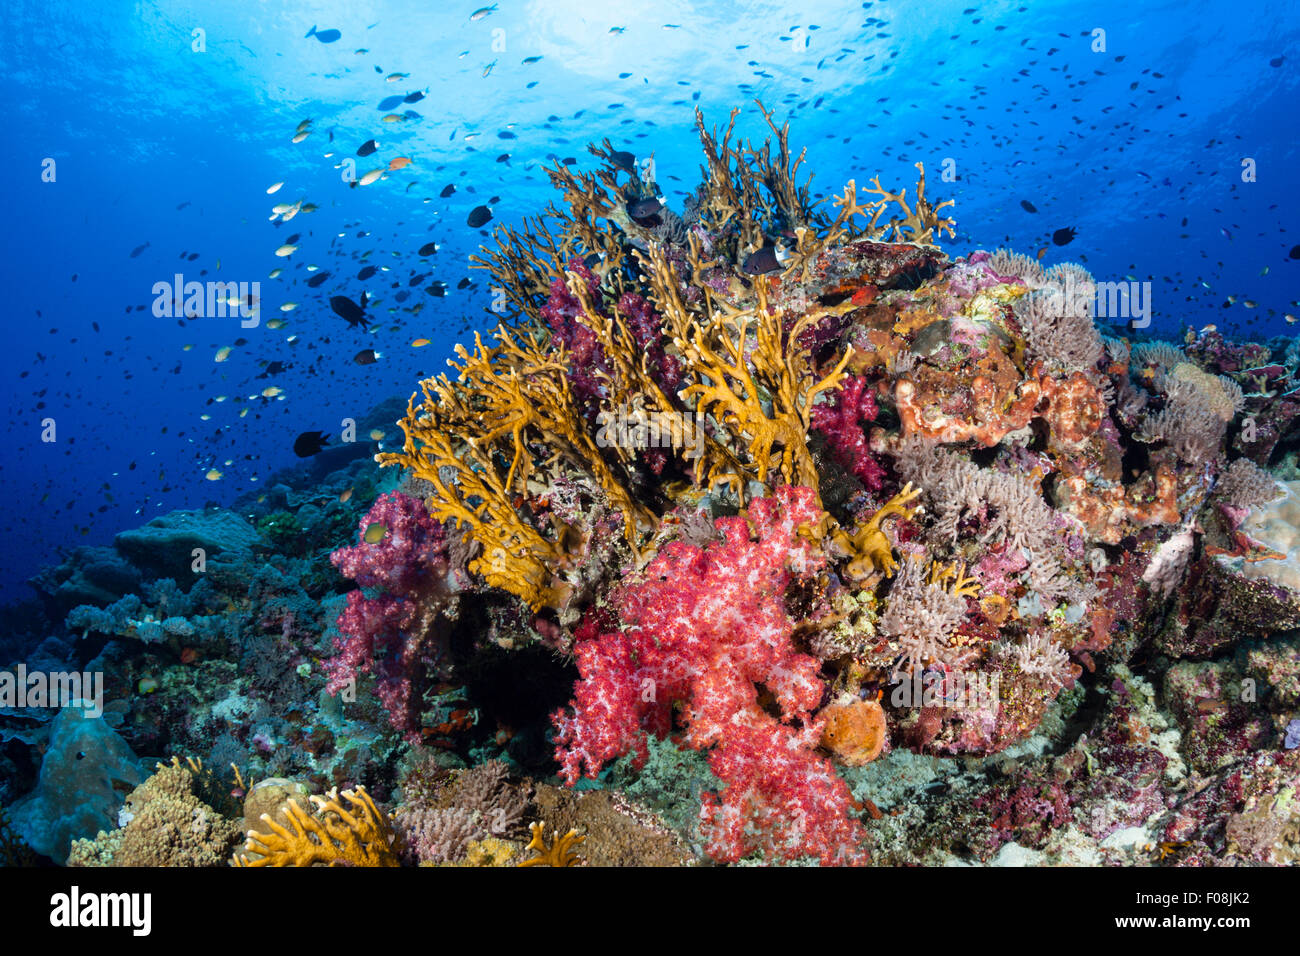 Arrecifes de coral coloreados, María Island, Islas Salomón Foto de stock